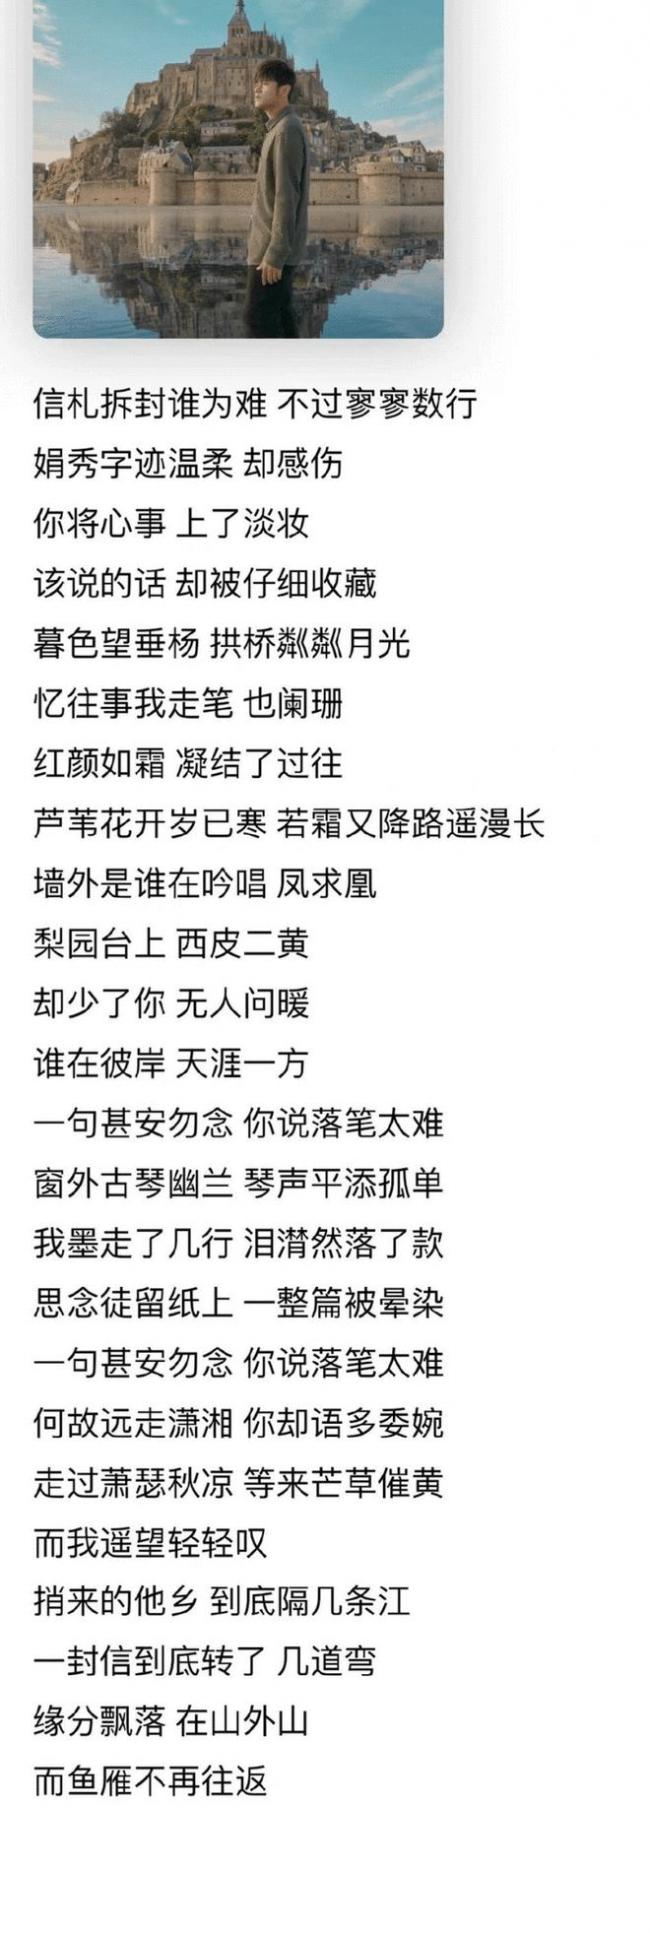 周杰伦新专辑提前上线引惊喜 中国风歌曲受好评